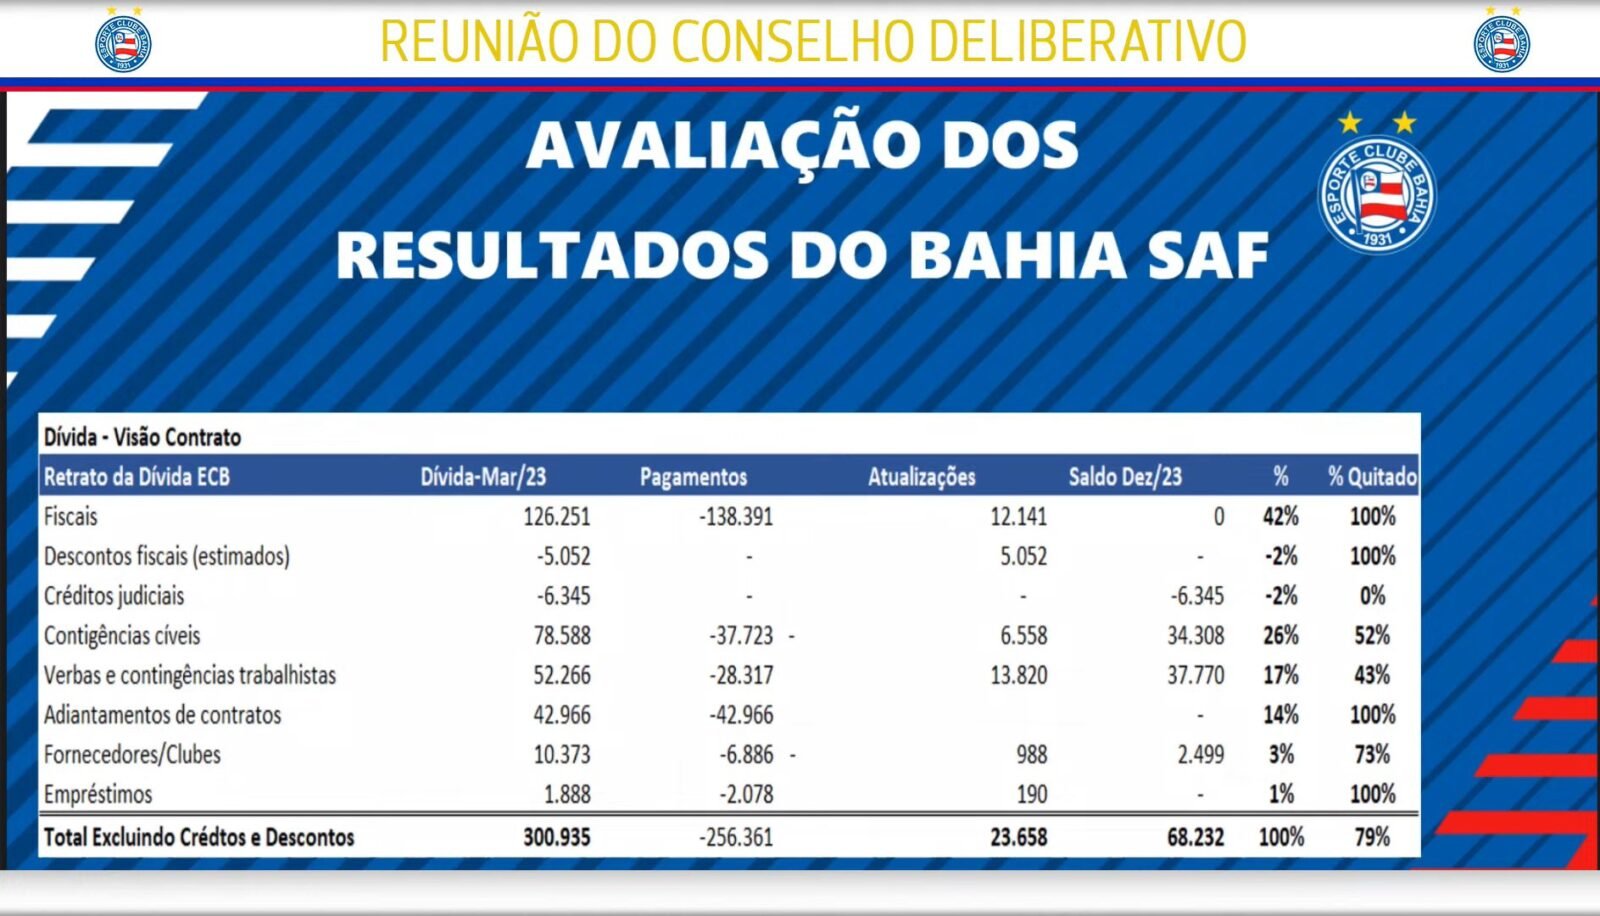 Avaliação dos resultados do Bahia SAF. Foto: Divulgação/Conselho Deliberativo do Bahia